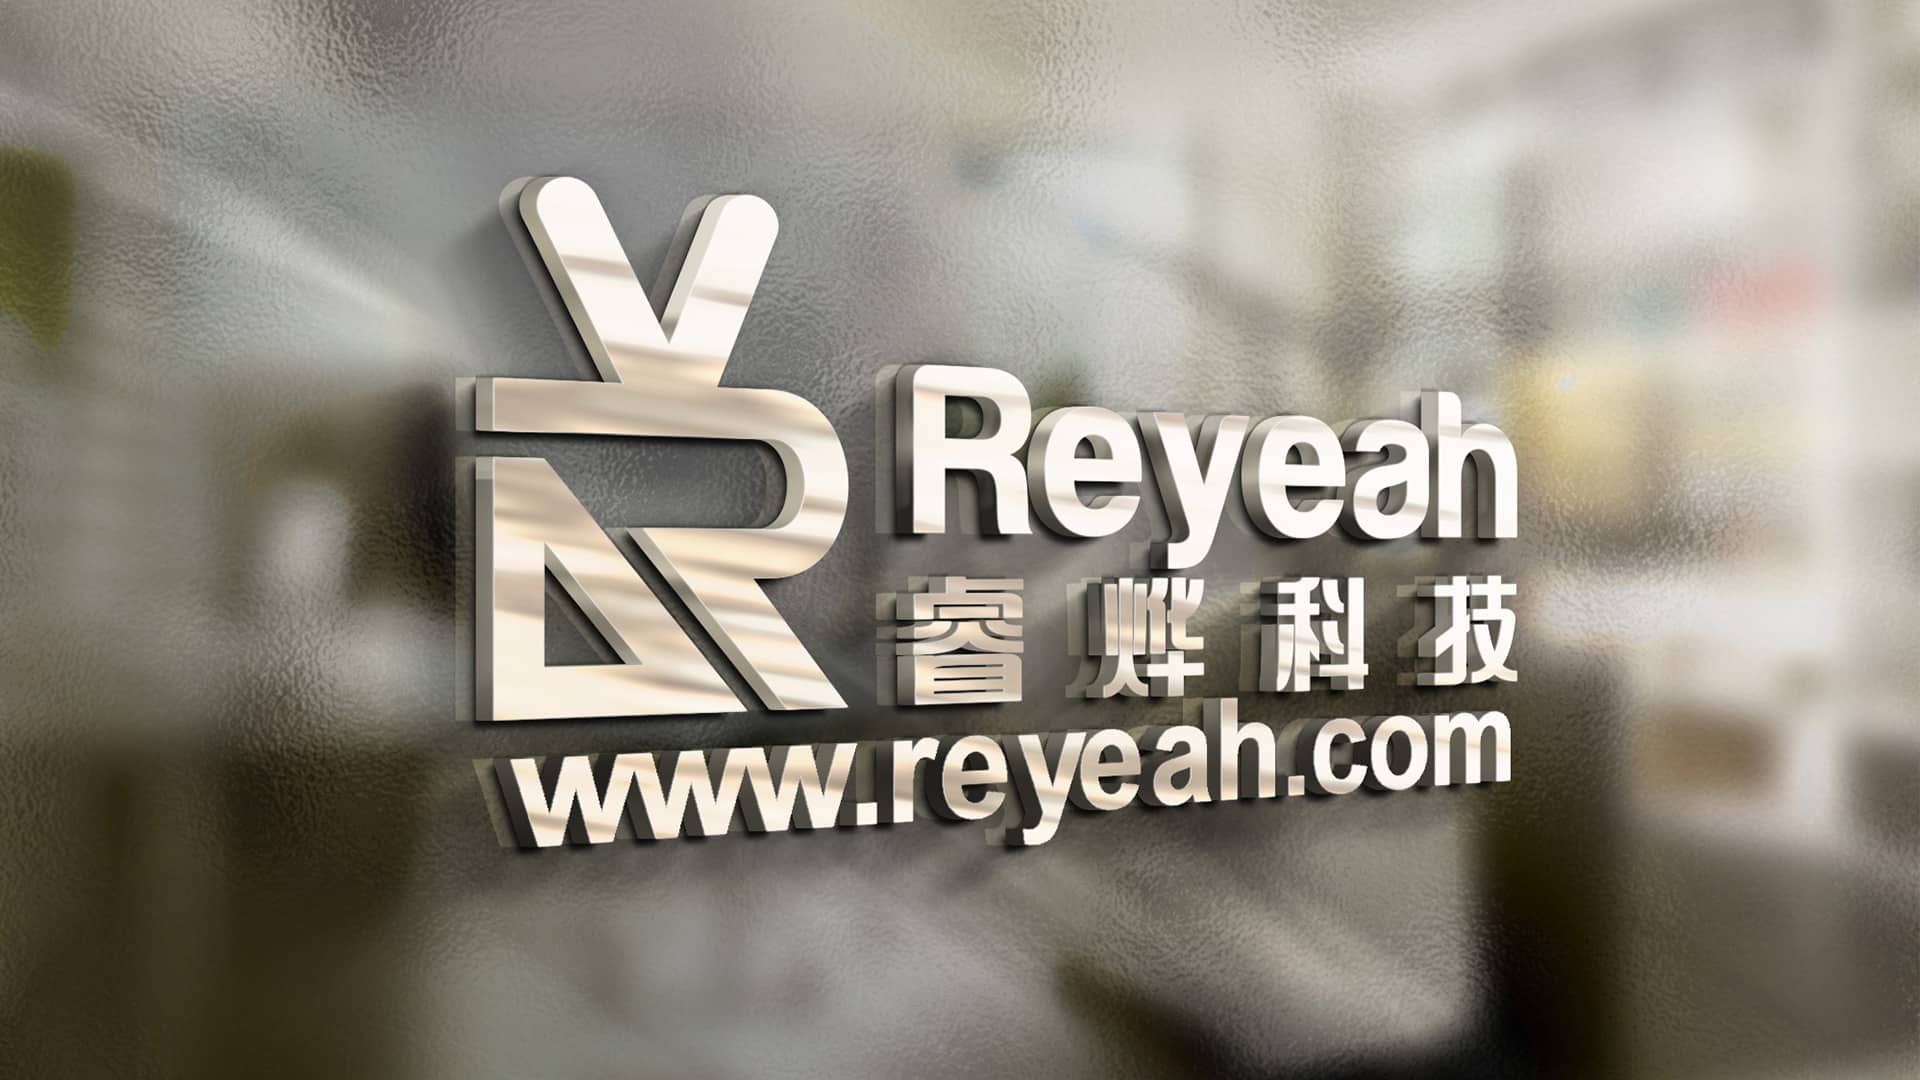 Guangzhou Reyeah Technology Co., Ltd.